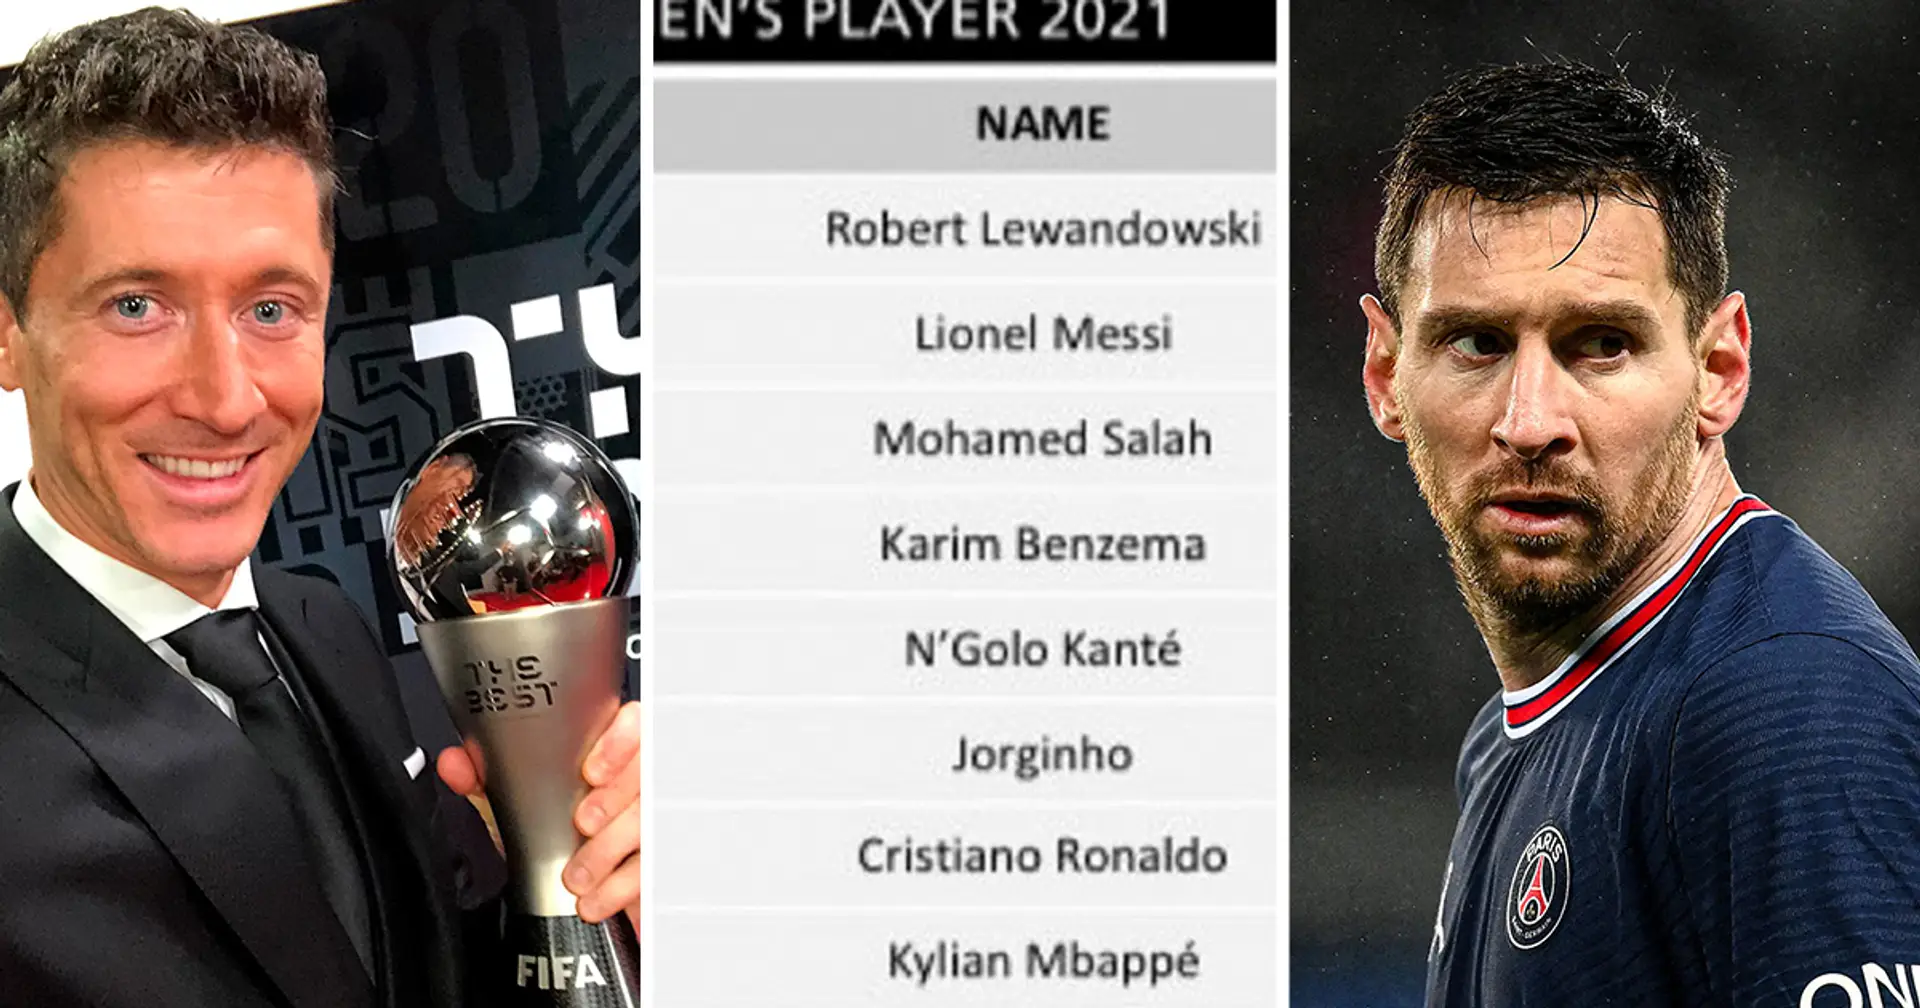 Messi pierde ante Lewandowski por un margen estrecho: revelados los resultados de la votación de FIFA 'The Best'